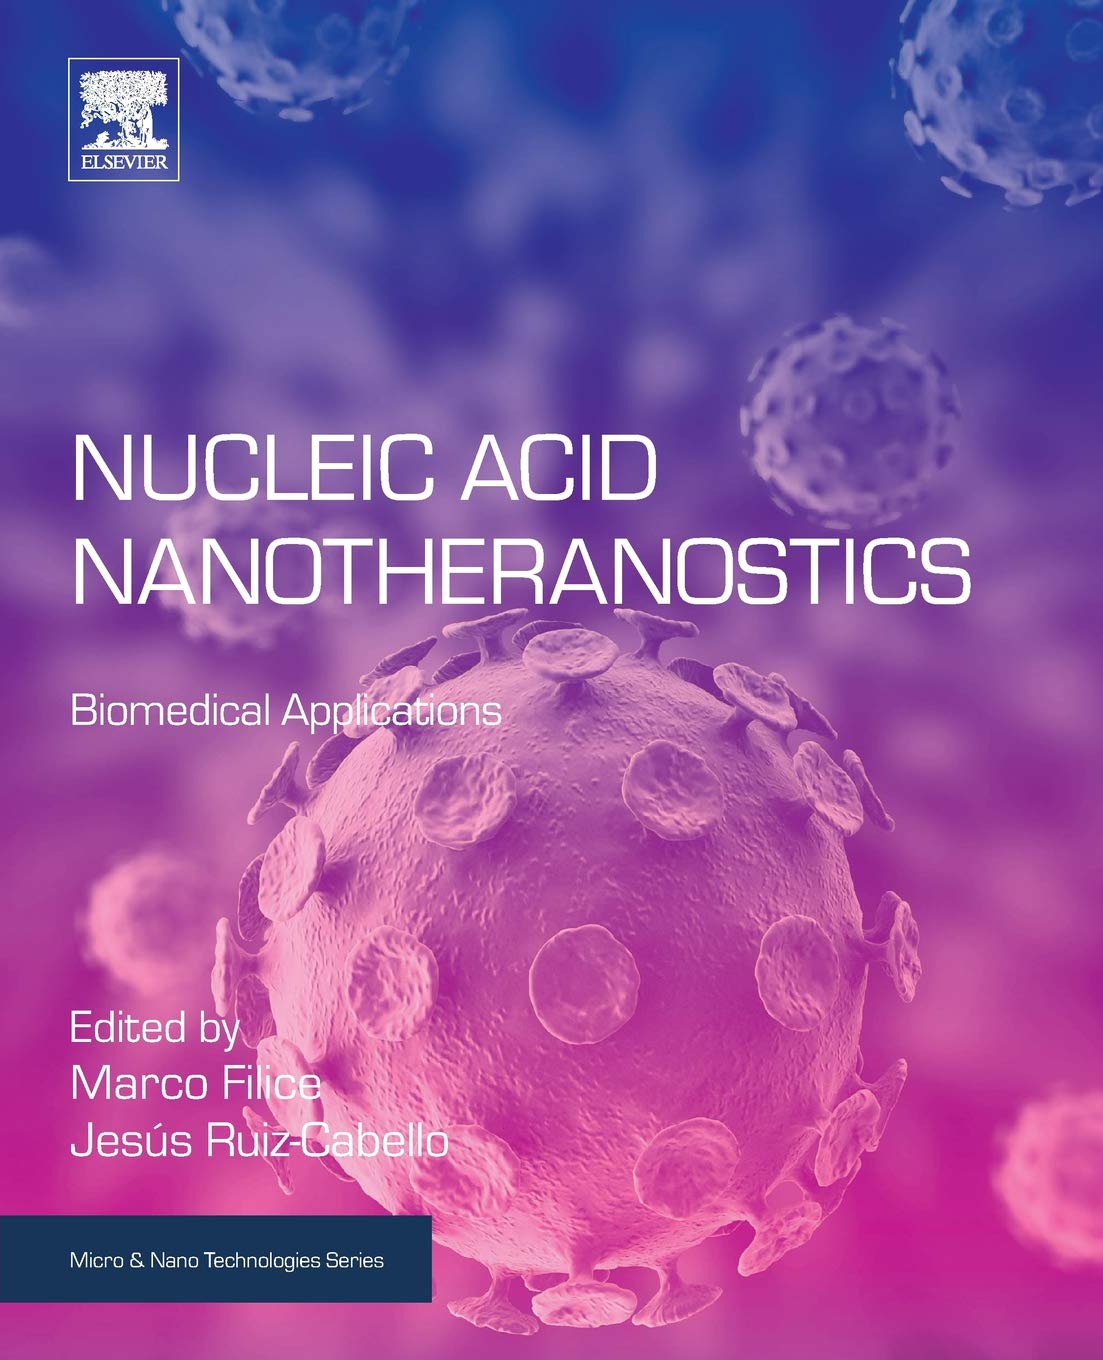 Filice. Nucleic Acid Nanotheranostics: Biomedical Applications. 2019